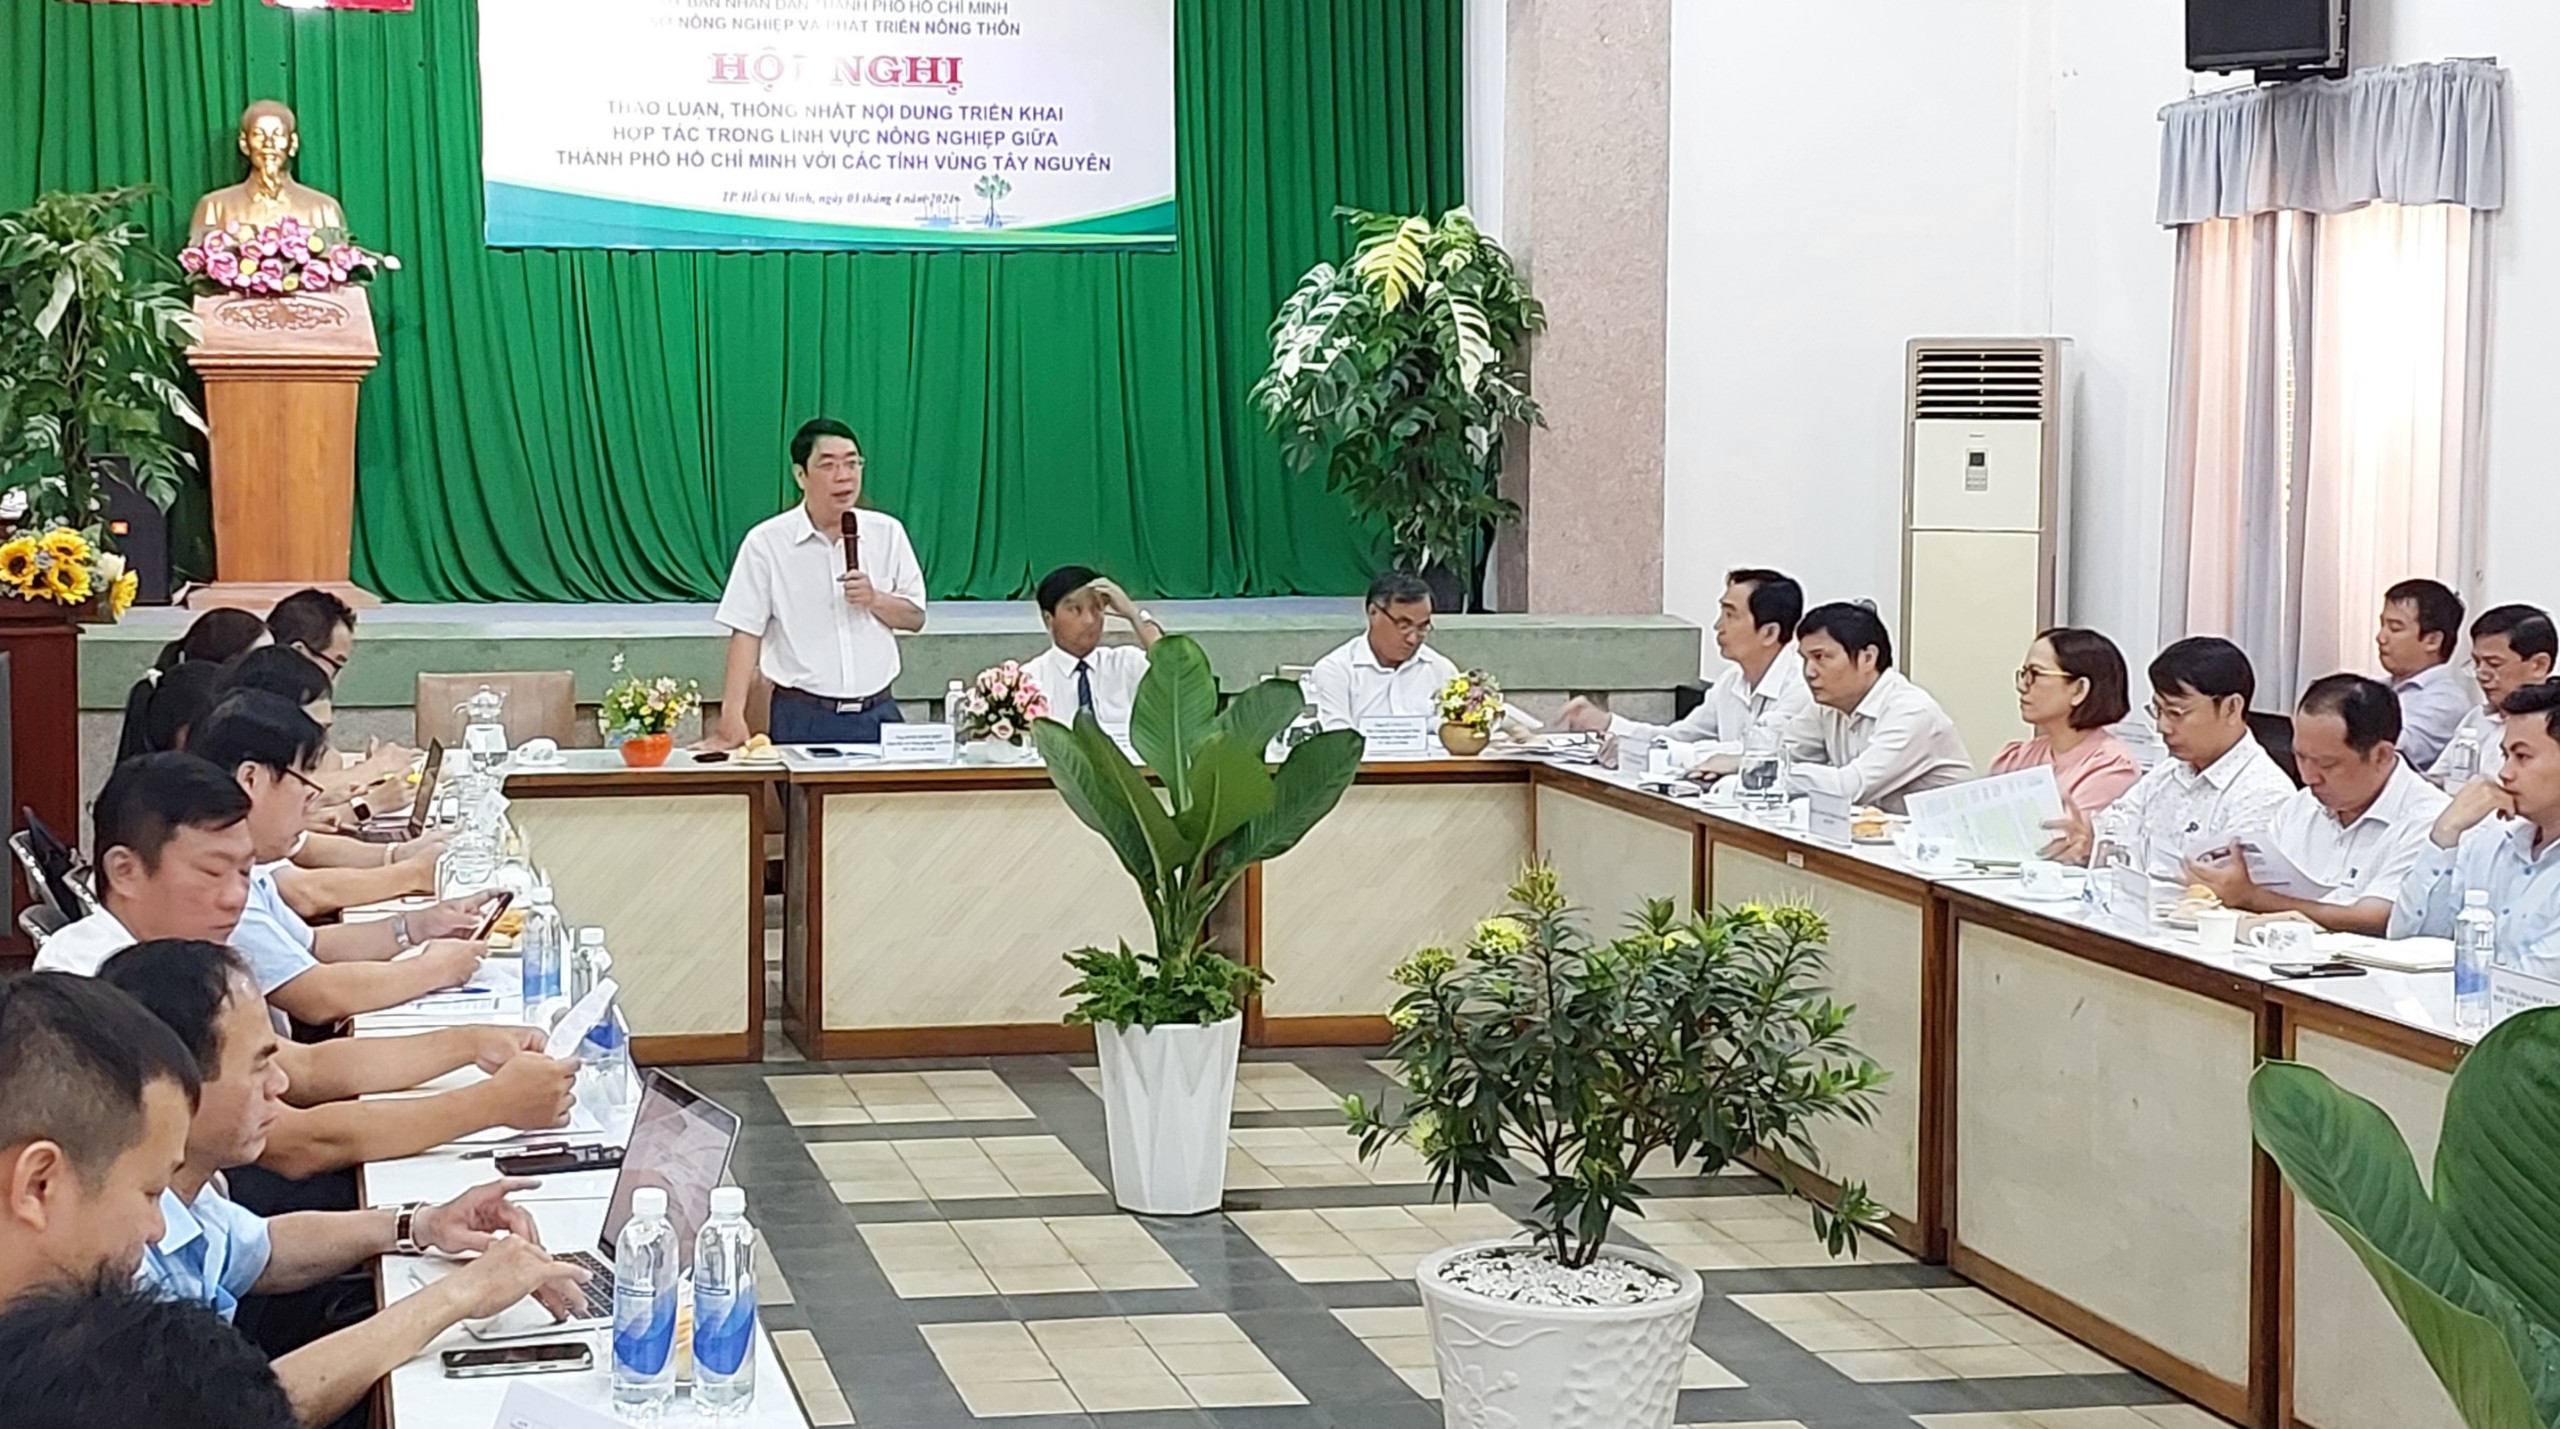 Thành phố Hồ Chí Minh và Đắk Lắk hợp tác trong lĩnh vực nông nghiệp